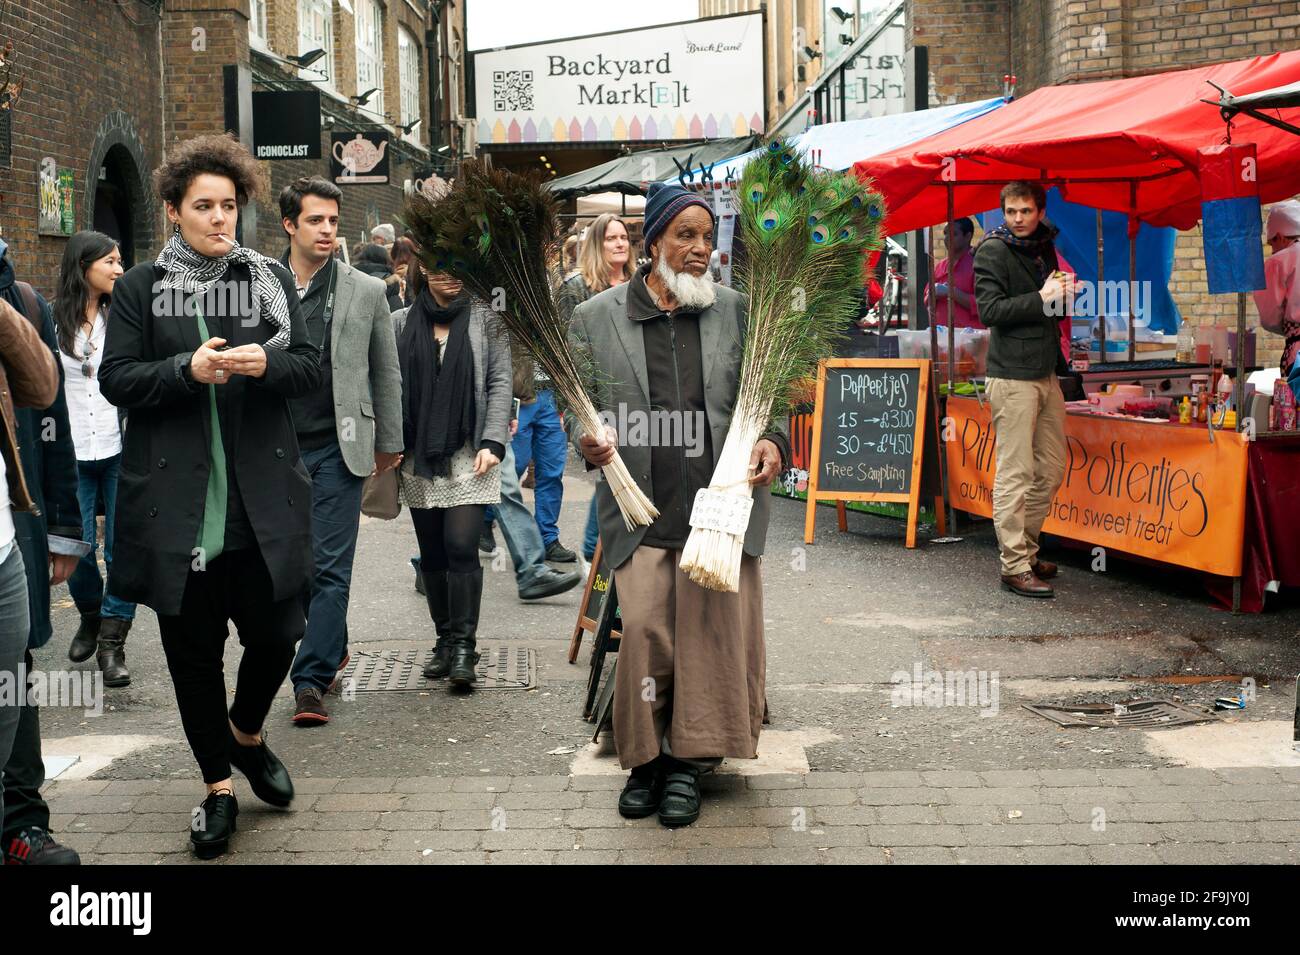 Uomo musulmano che vende piume di pavone. Domenica mercato di strada su Brick Lane, East London, Regno Unito. Apr 2014 Foto Stock